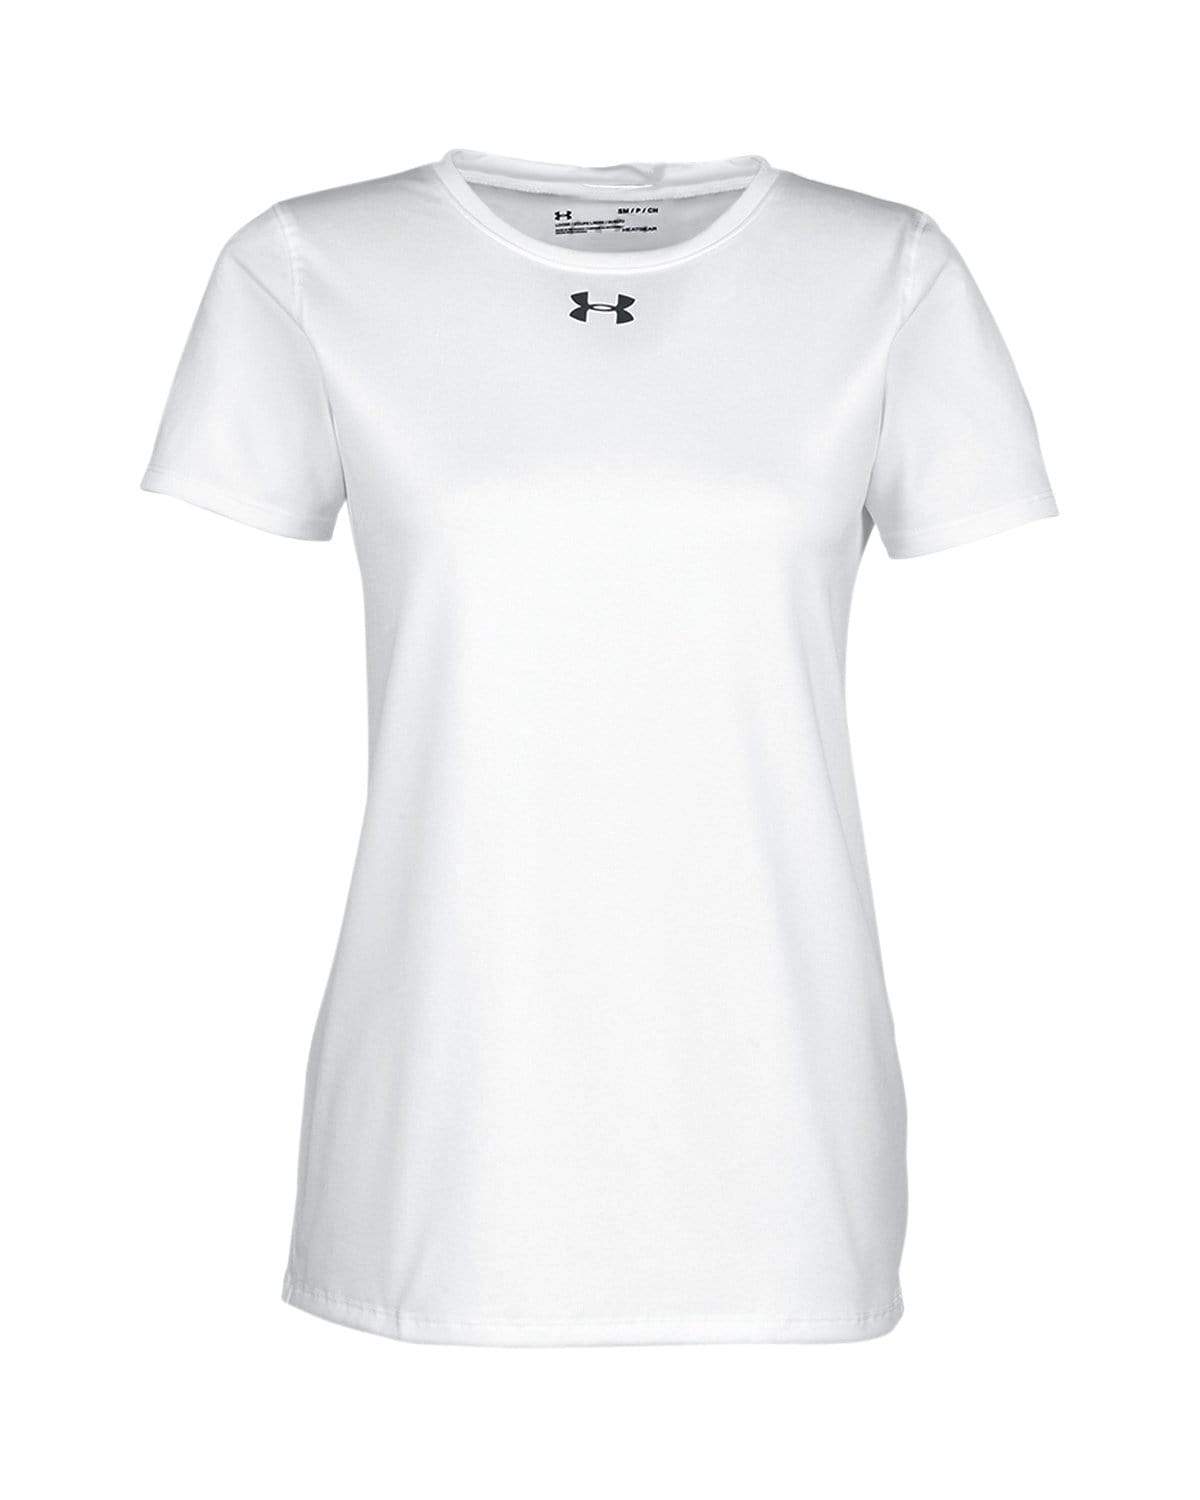 Under Armour - Women's Locker T-Shirt 2.0 – Threadfellows